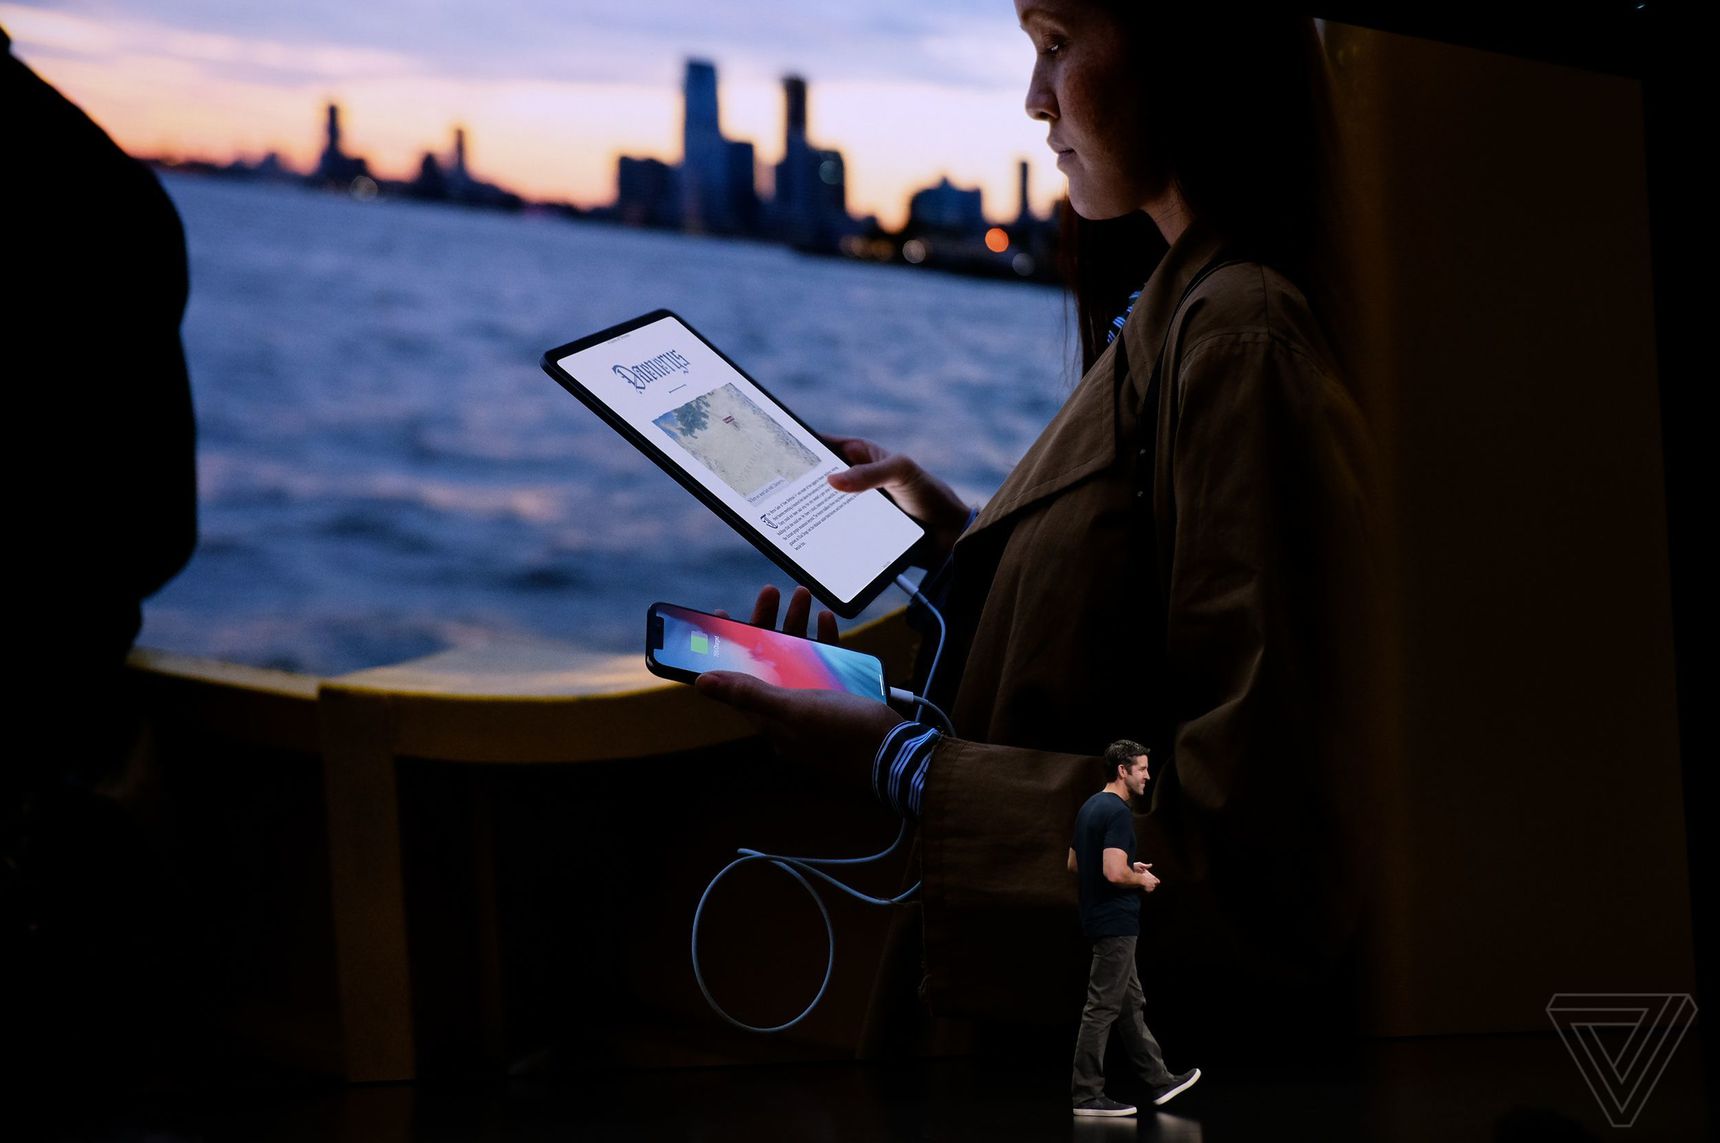 Apple xác nhận iPad Pro 2018 với cổng USB-C sắp có thêm tính năng mới